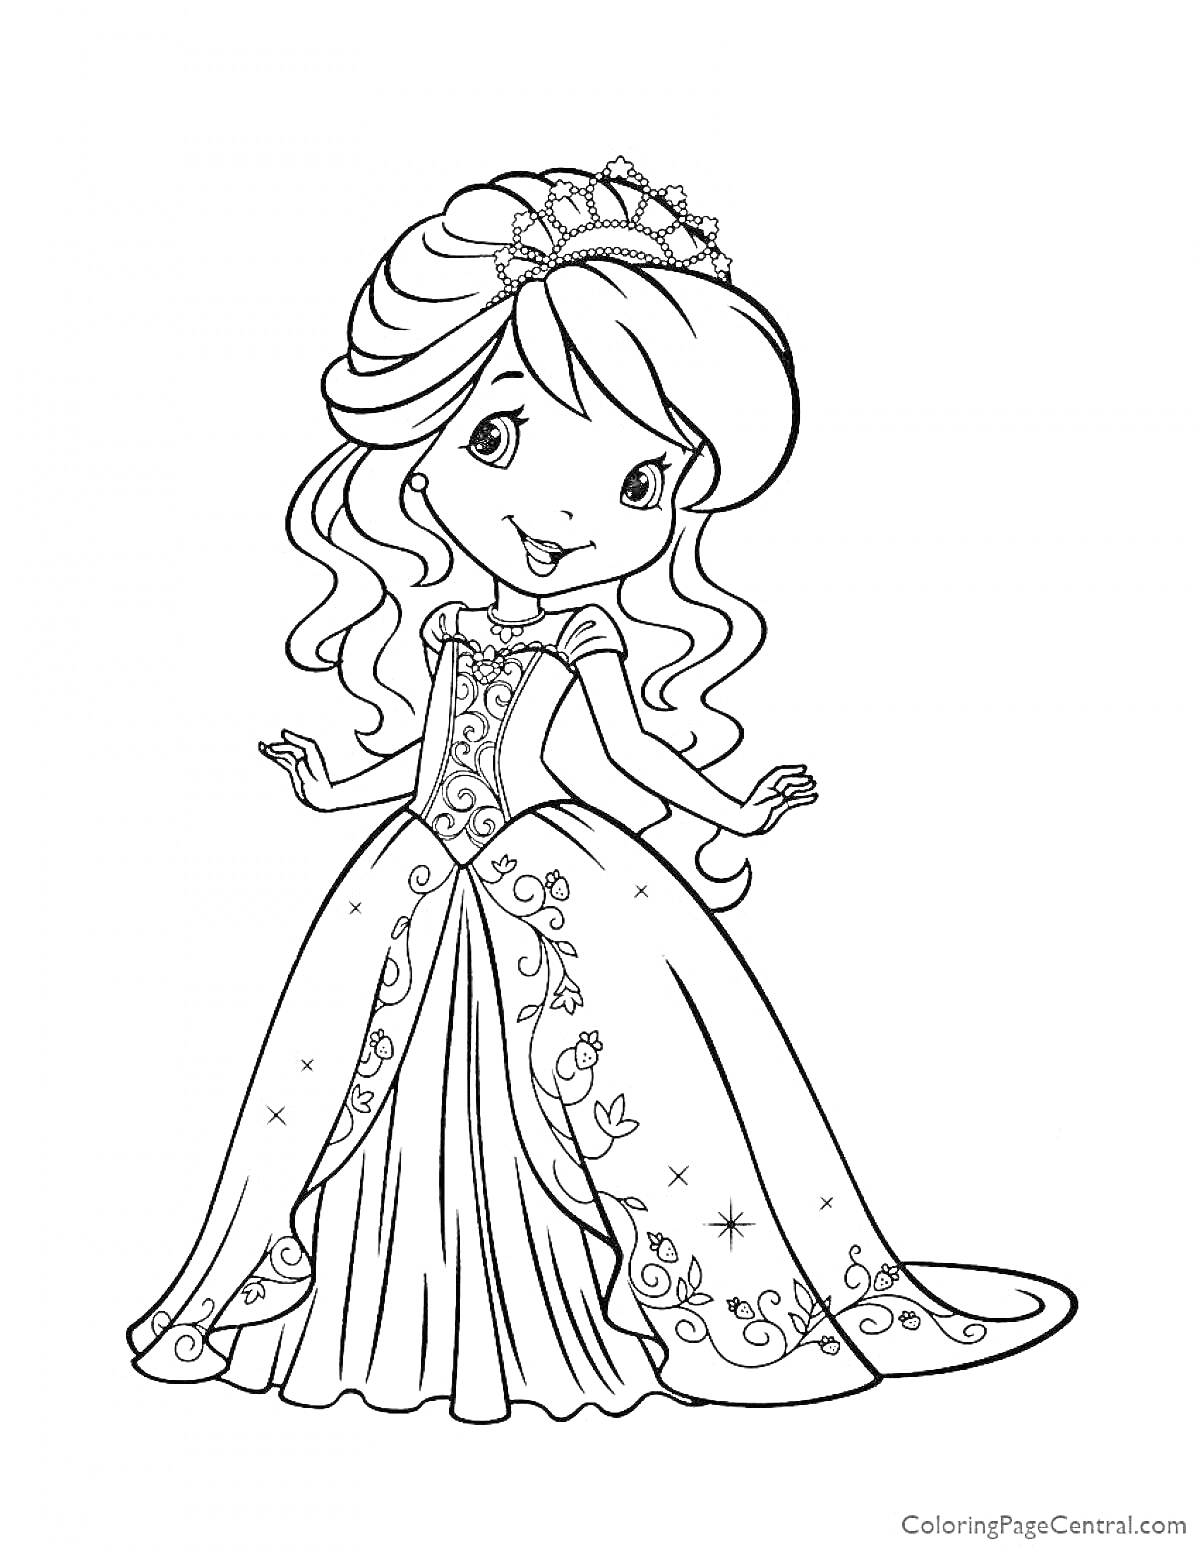 Раскраска Принцесса в длинном платье с узорами и диадемой